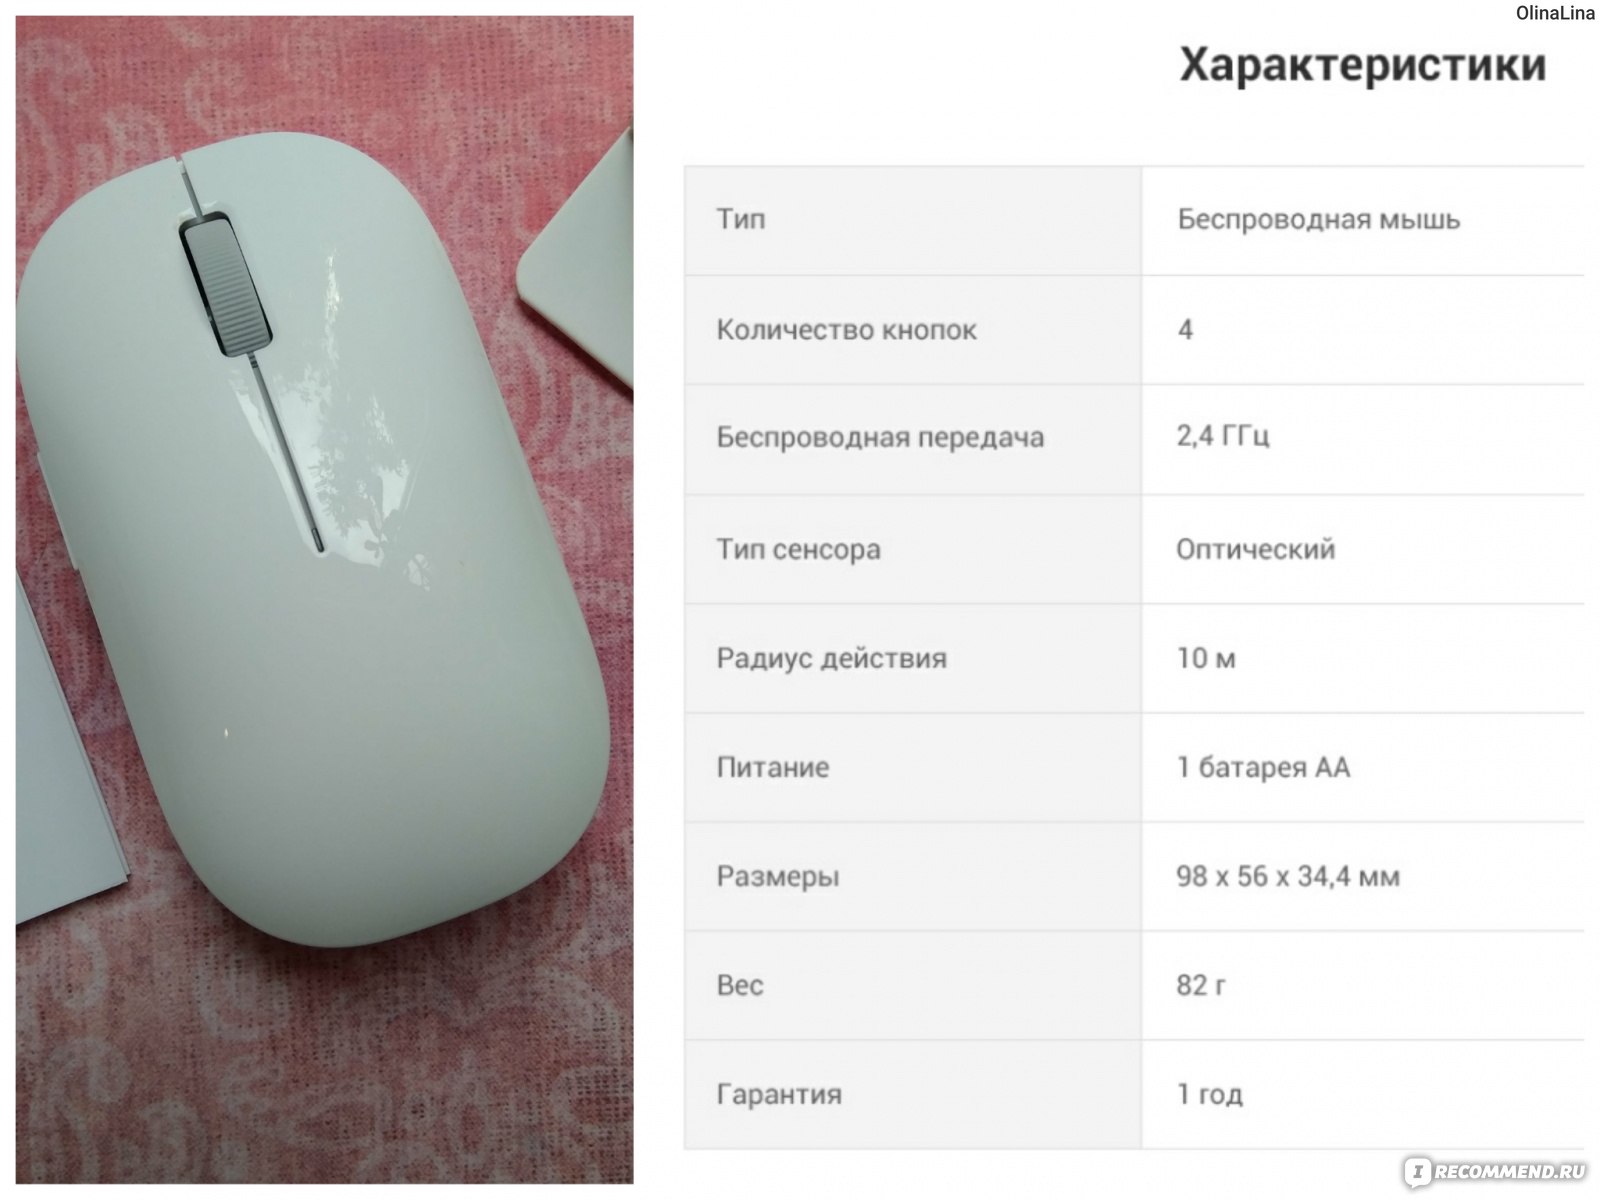 Беспроводная мышь характеристика. Характеристики мышь беспроводная Xiaomi белый. Сяоми мышка беспроводная на батарейках. Мышка Xiaomi беспроводная разбор. Разбор беспроводной мышки Xiaomi.